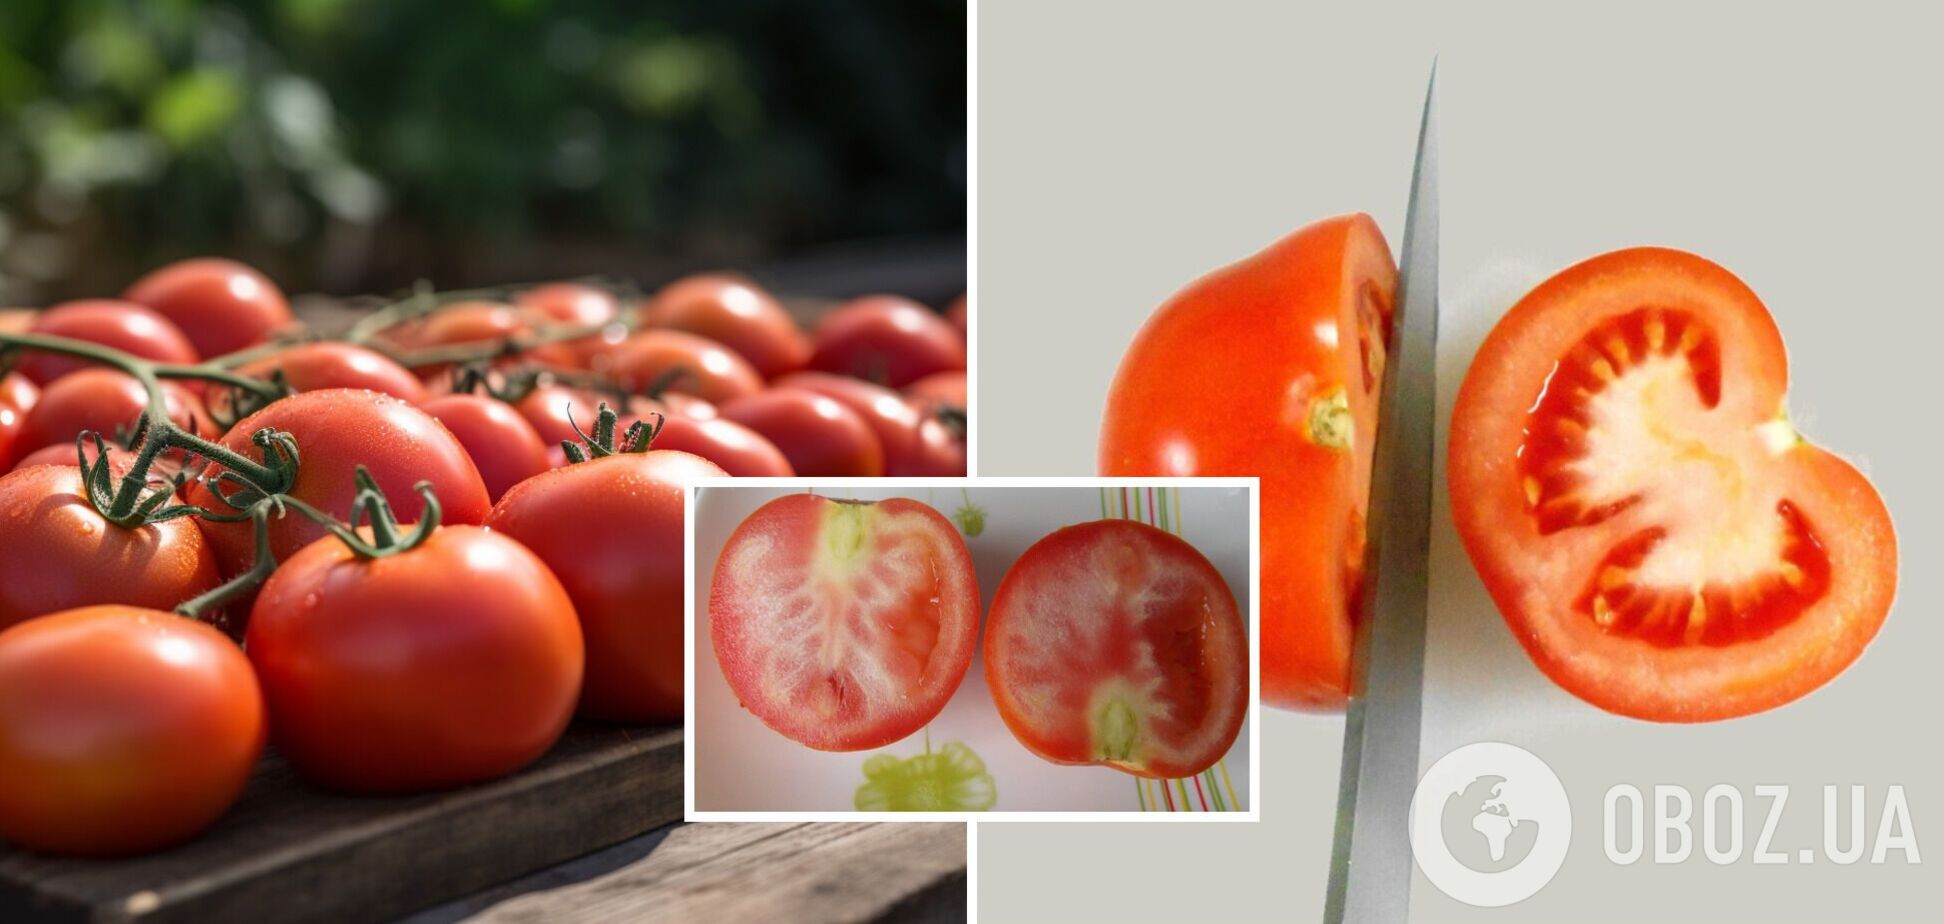 Чи можна їсти помідори з білими прожилками: можуть вказувати на хворобу